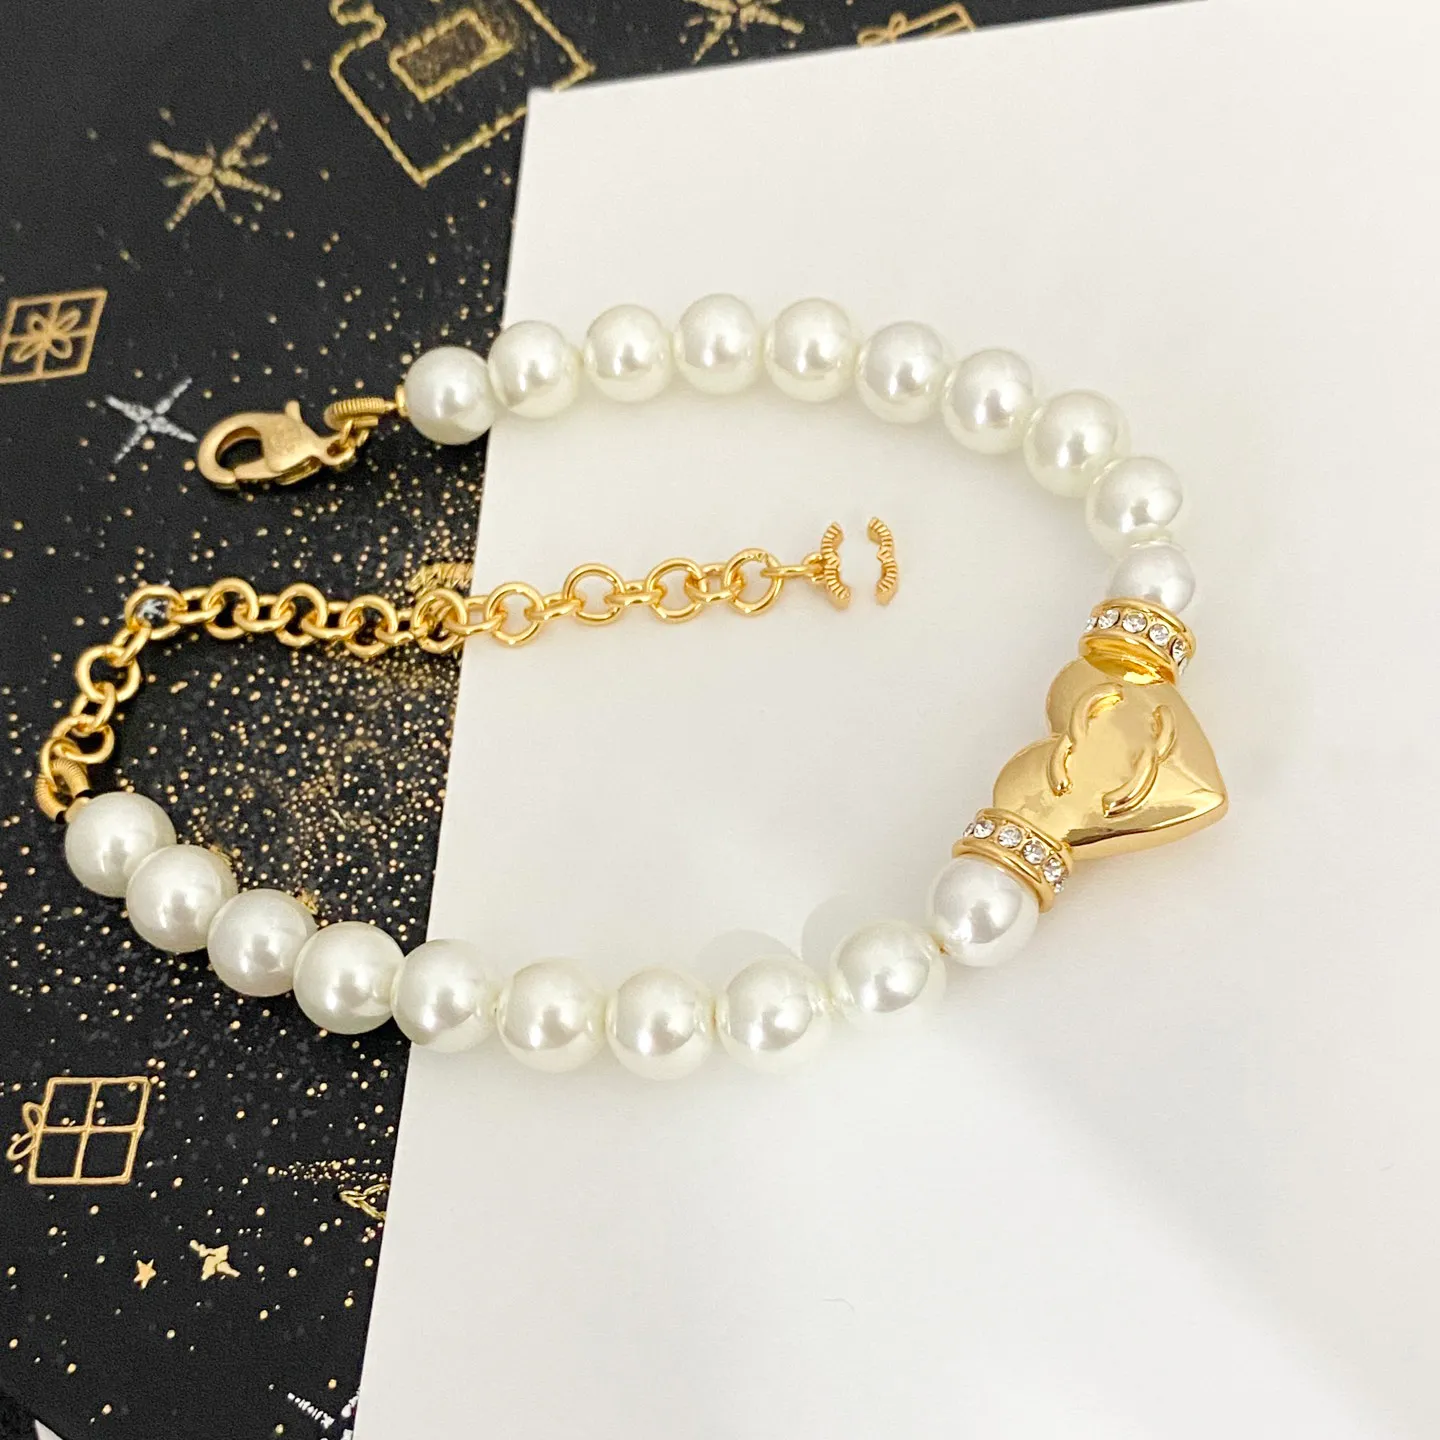 Design Bracciale Bracciale Lettera Bracciale Chain Women 18K in oro in oro Luxury Parl Bracciale Crystal Link Coppia Coppia di gioielli Regalo Accessori